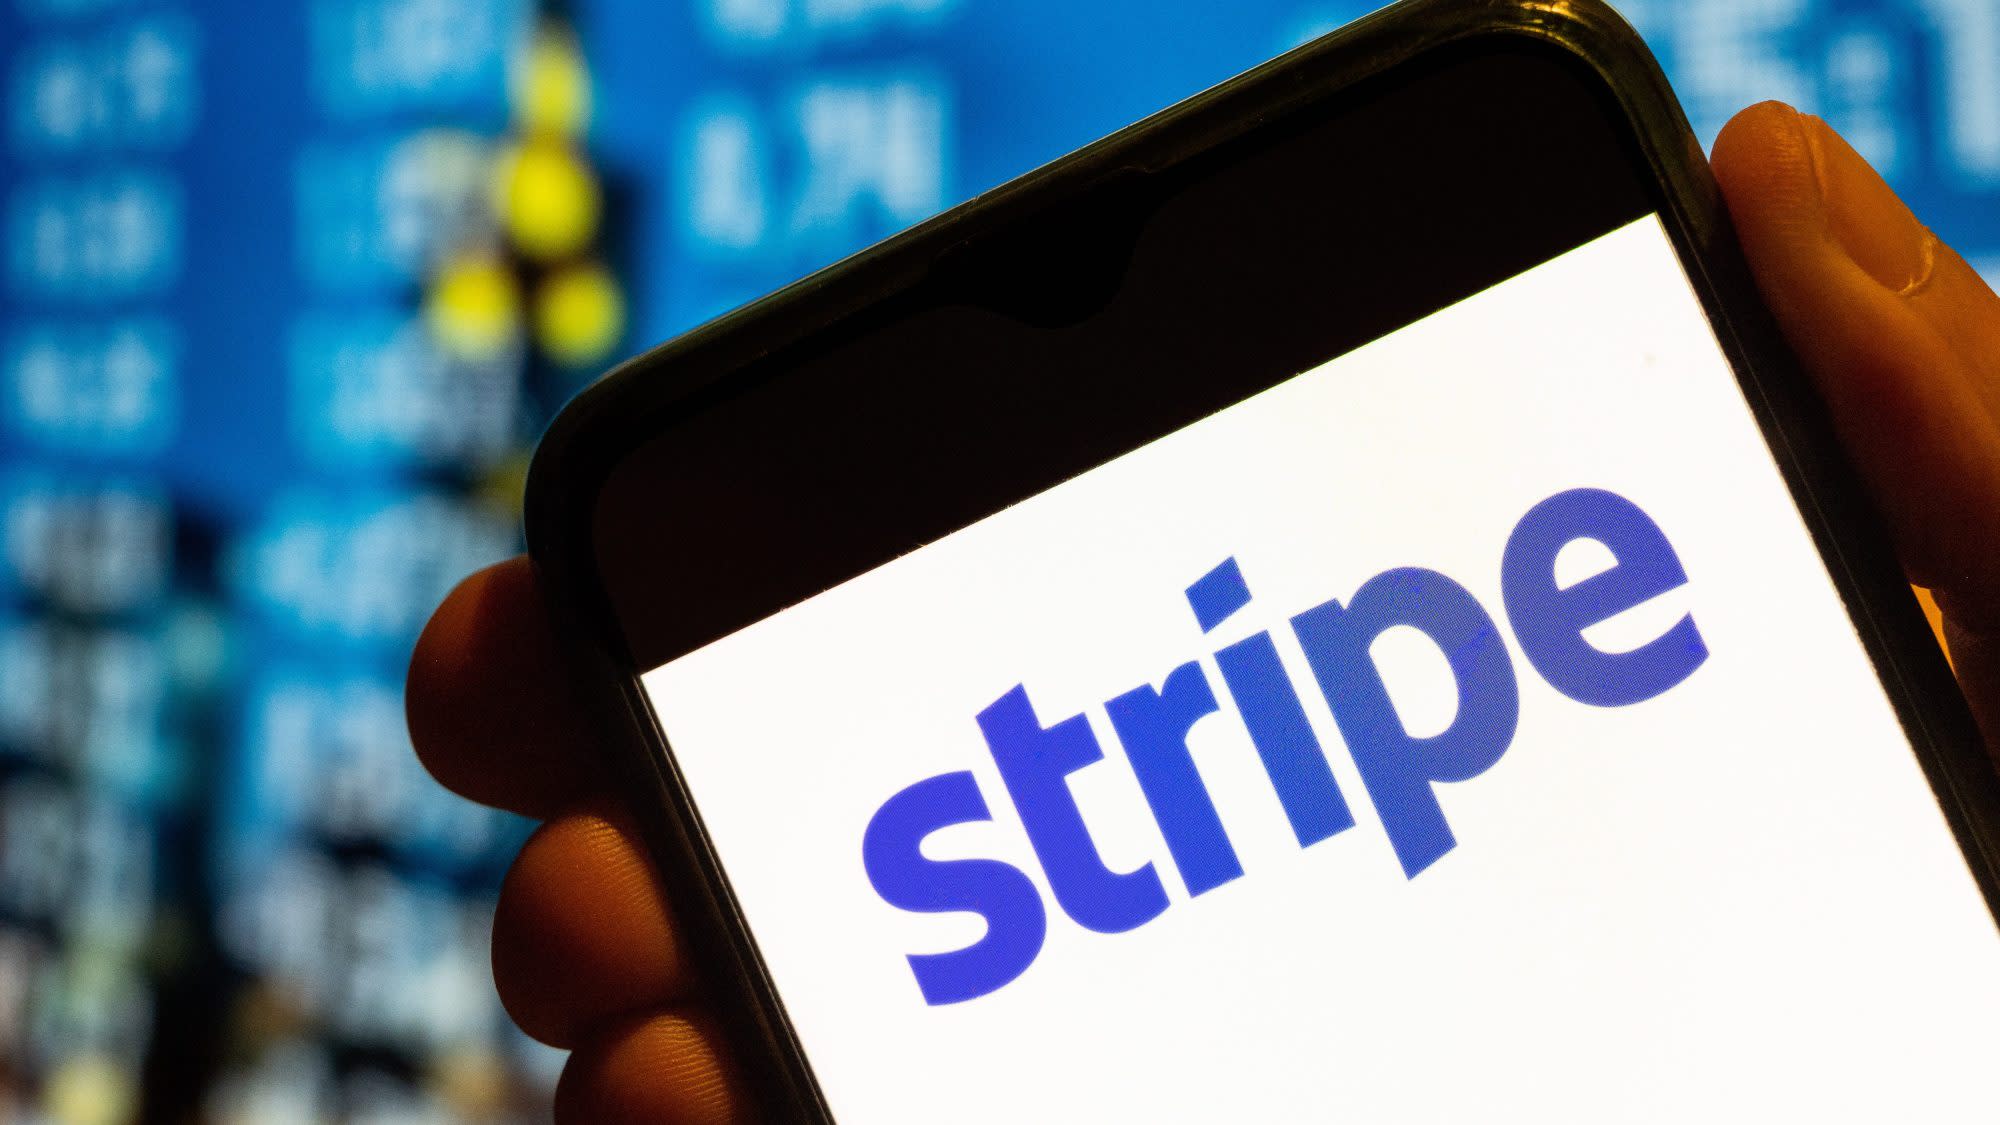 Stripe’s Valuation Soars To $65 Billion In Employee Stock-Sale Deal